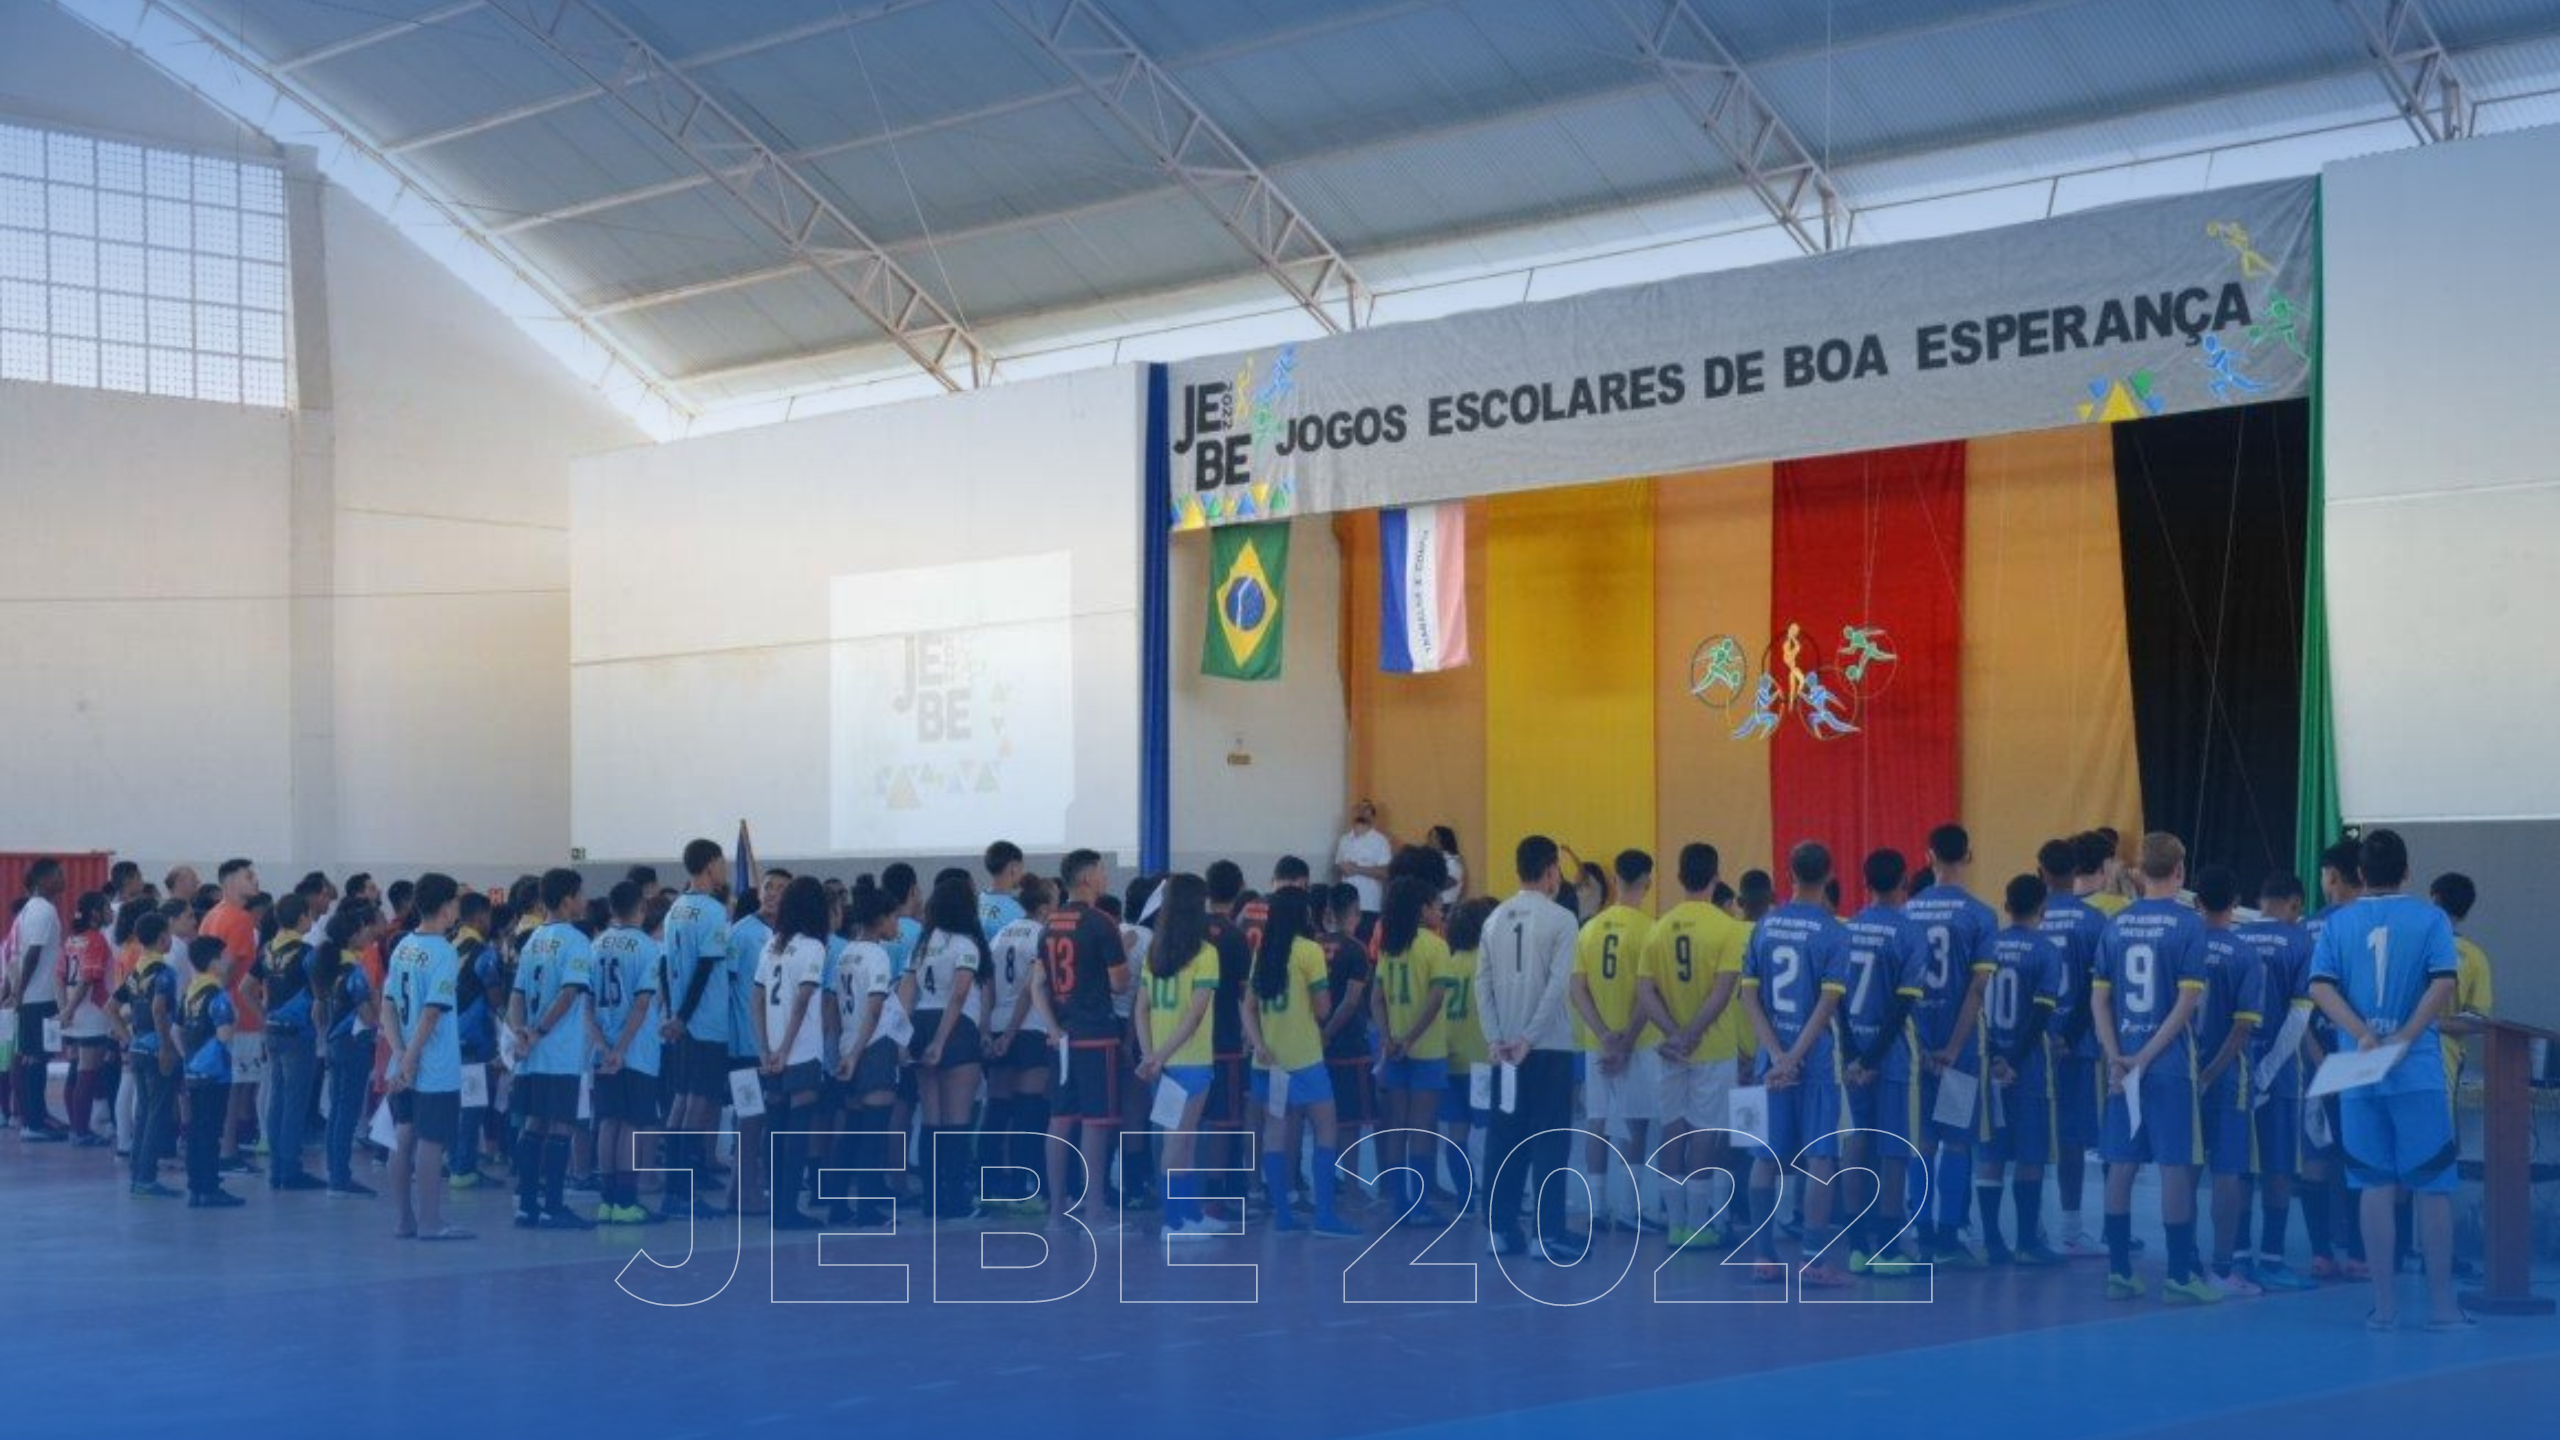 JEBE: Após 2 Anos, Jogos Escolares de Boa Esperança Estão de Volta